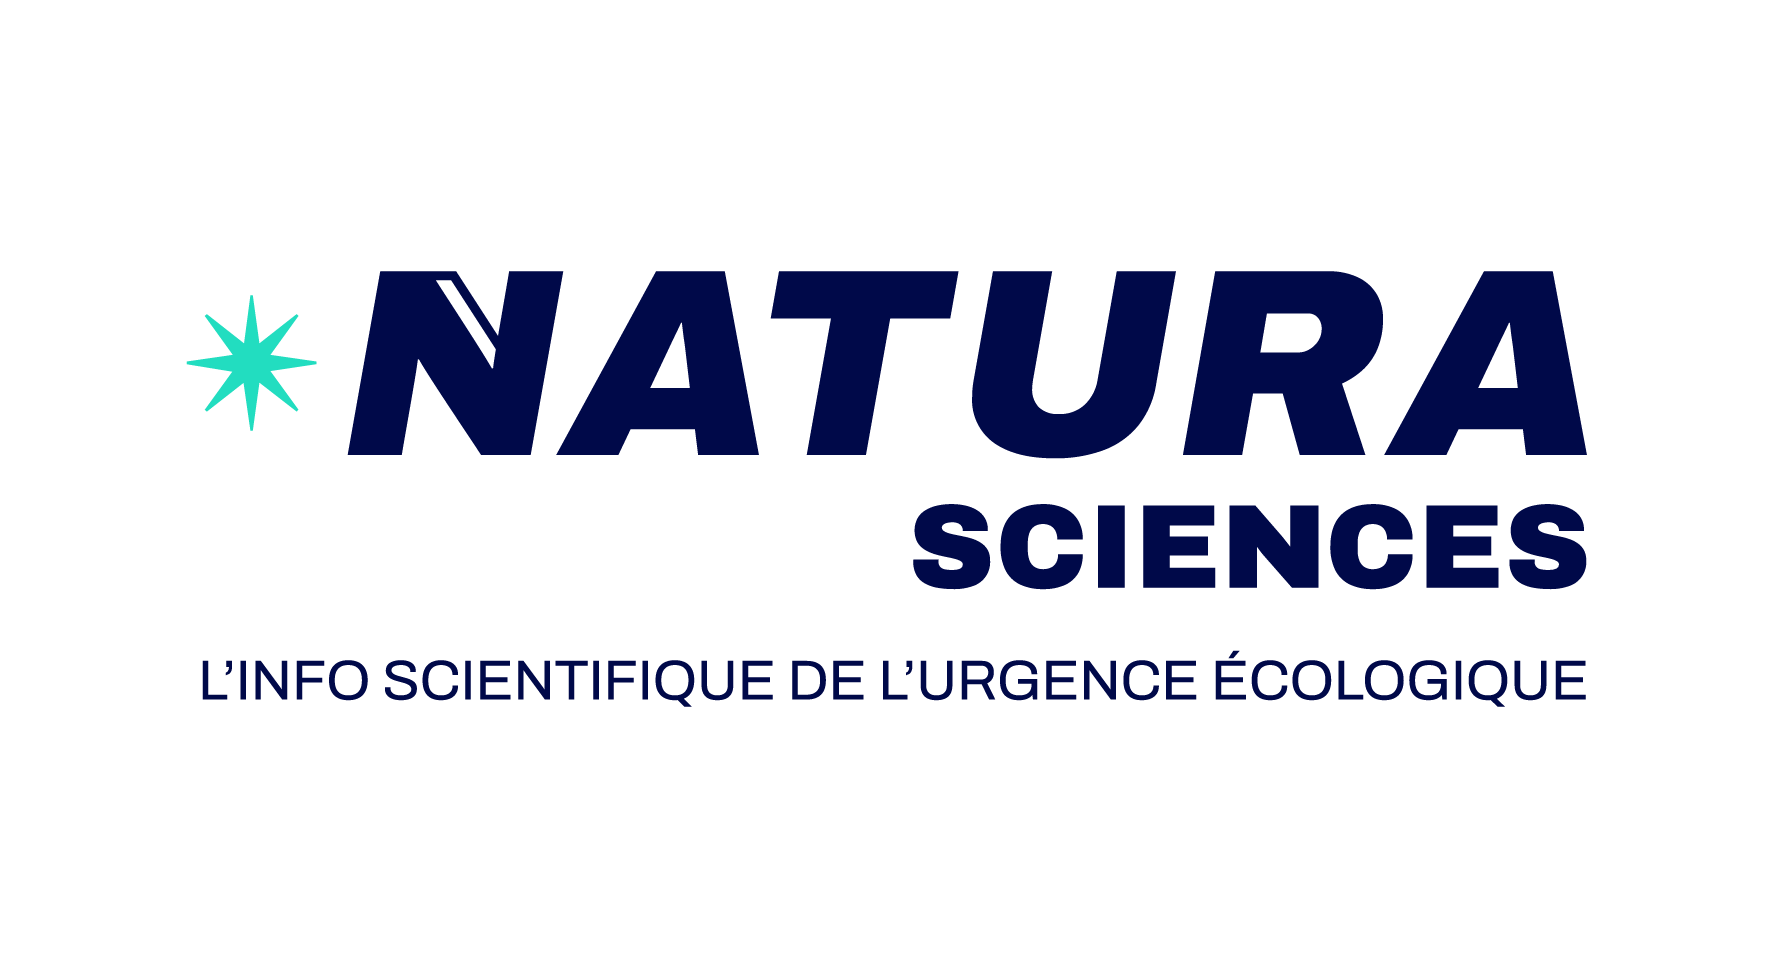 Natura Sciences